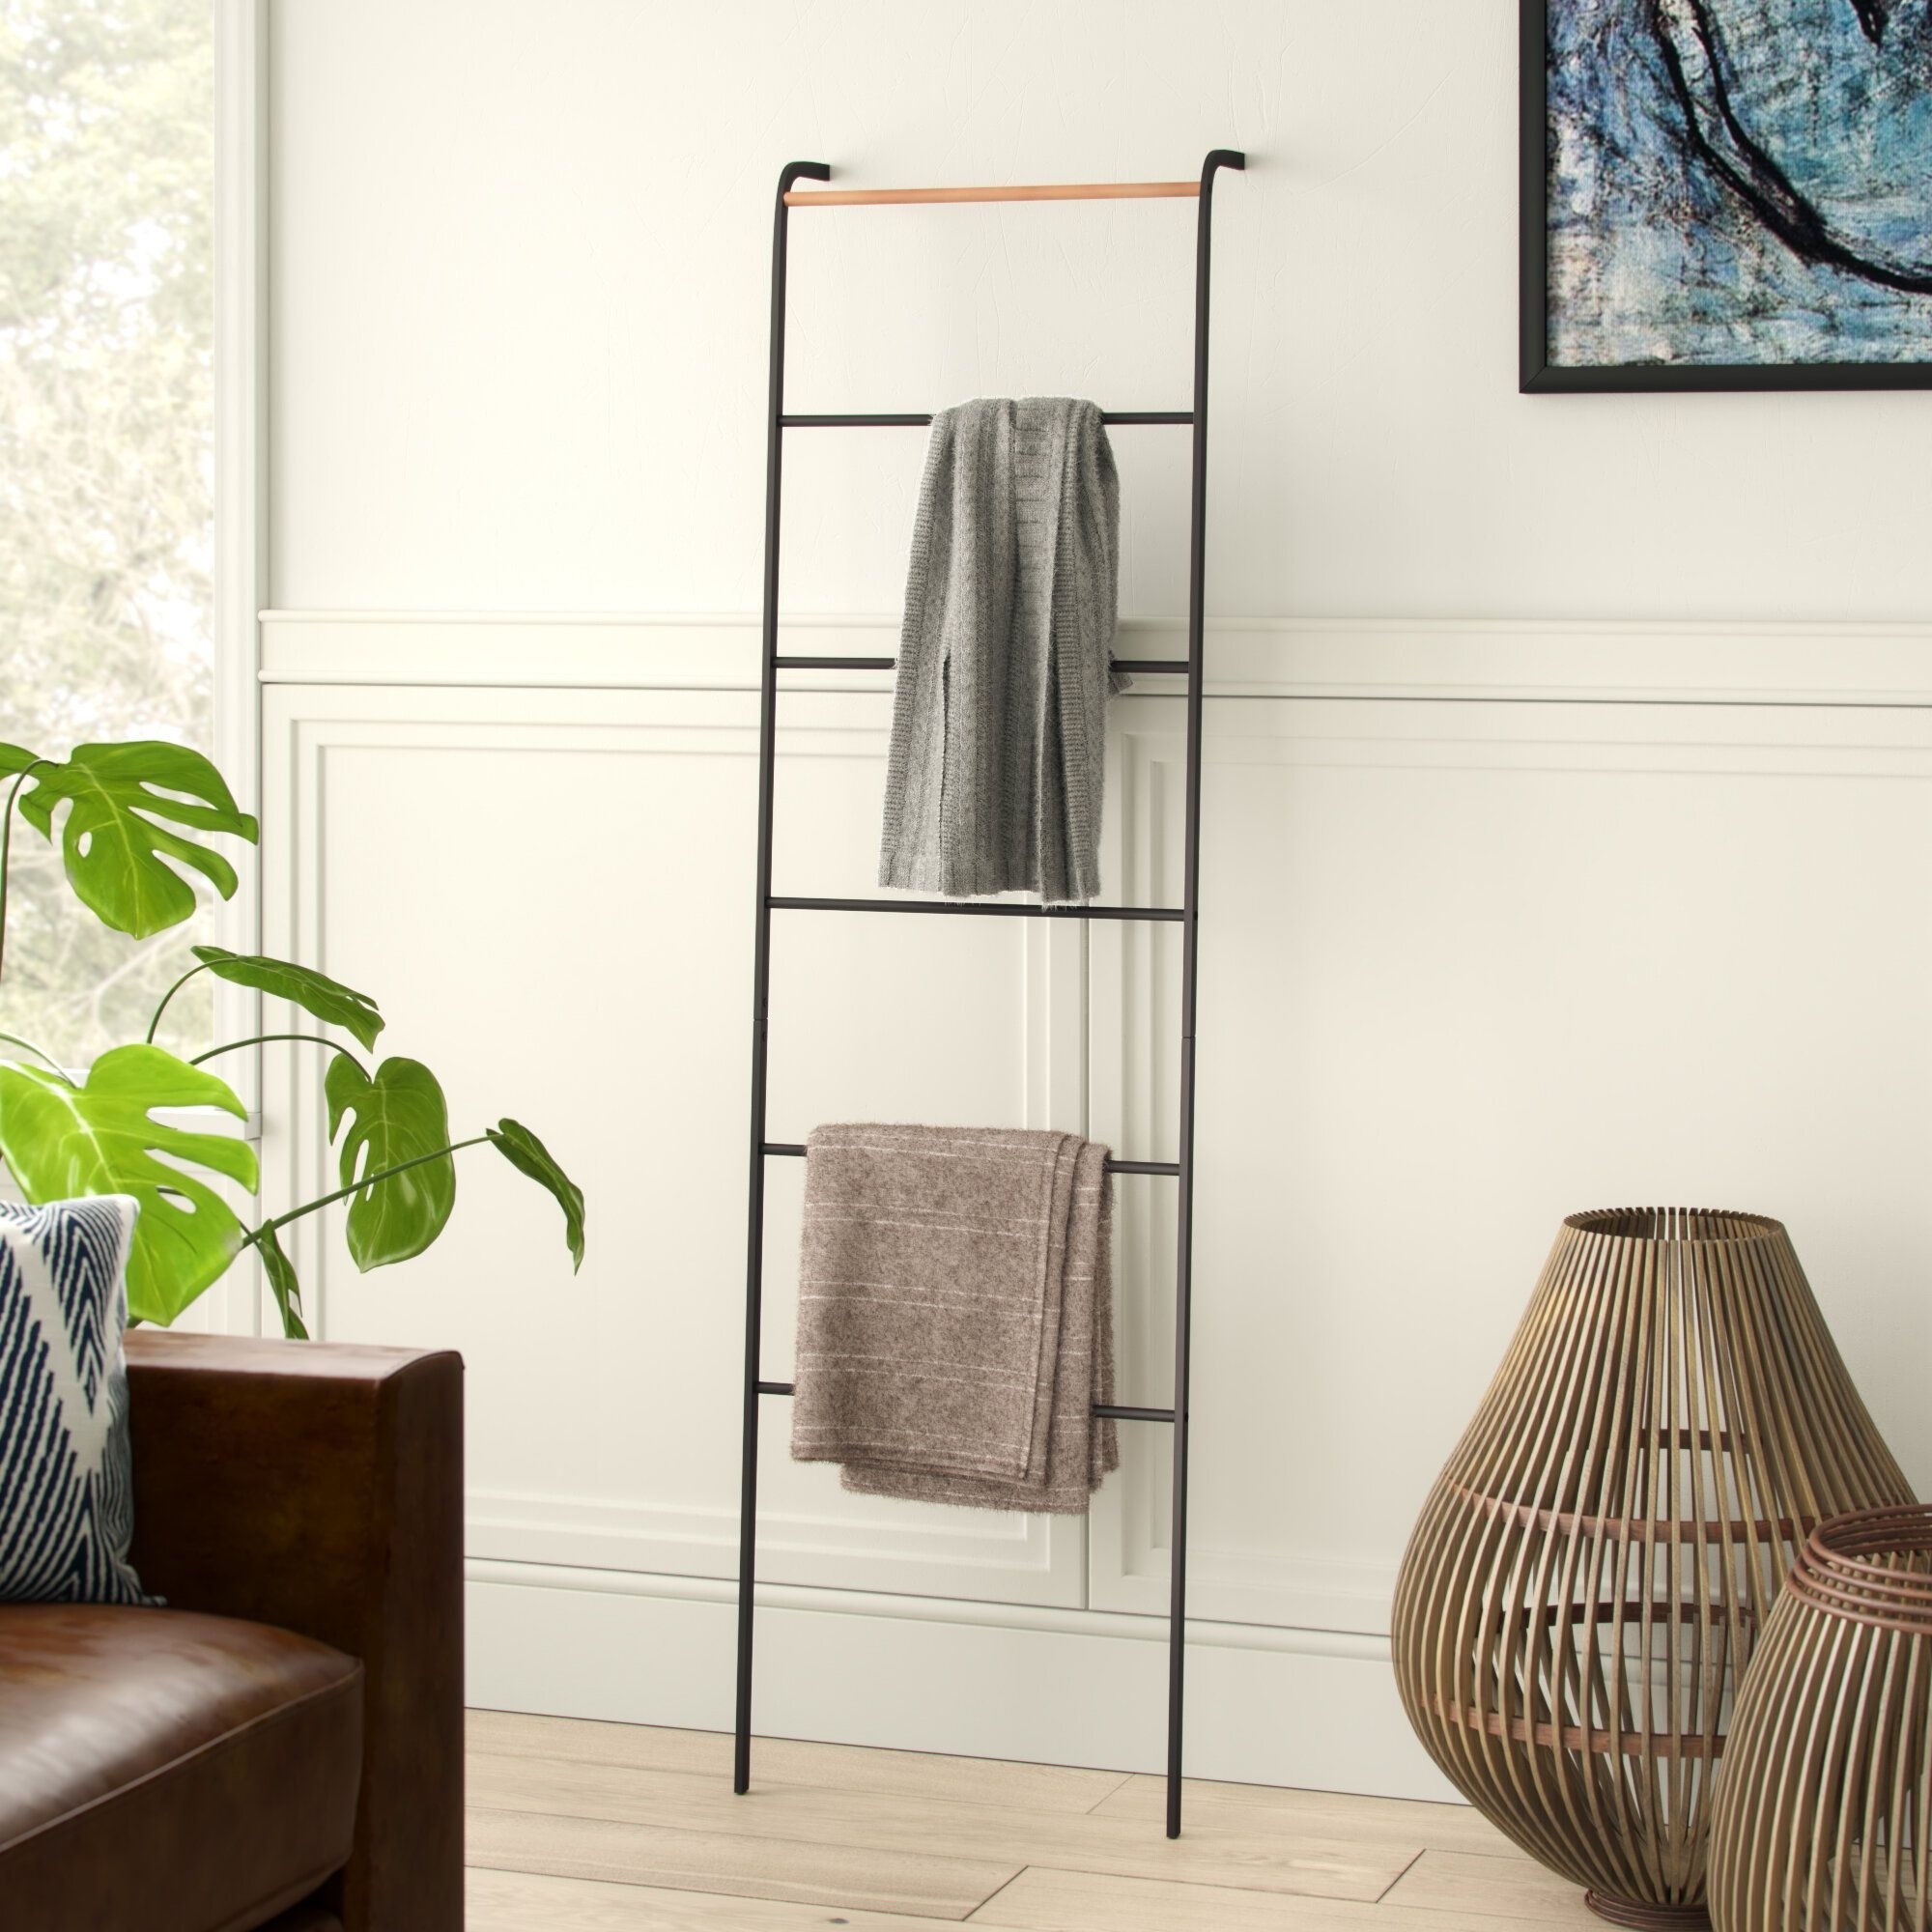 Details about    Blanket Ladder Quilt 5 FT Wood Rustic Decorative Towel Rack Storage Living Room 